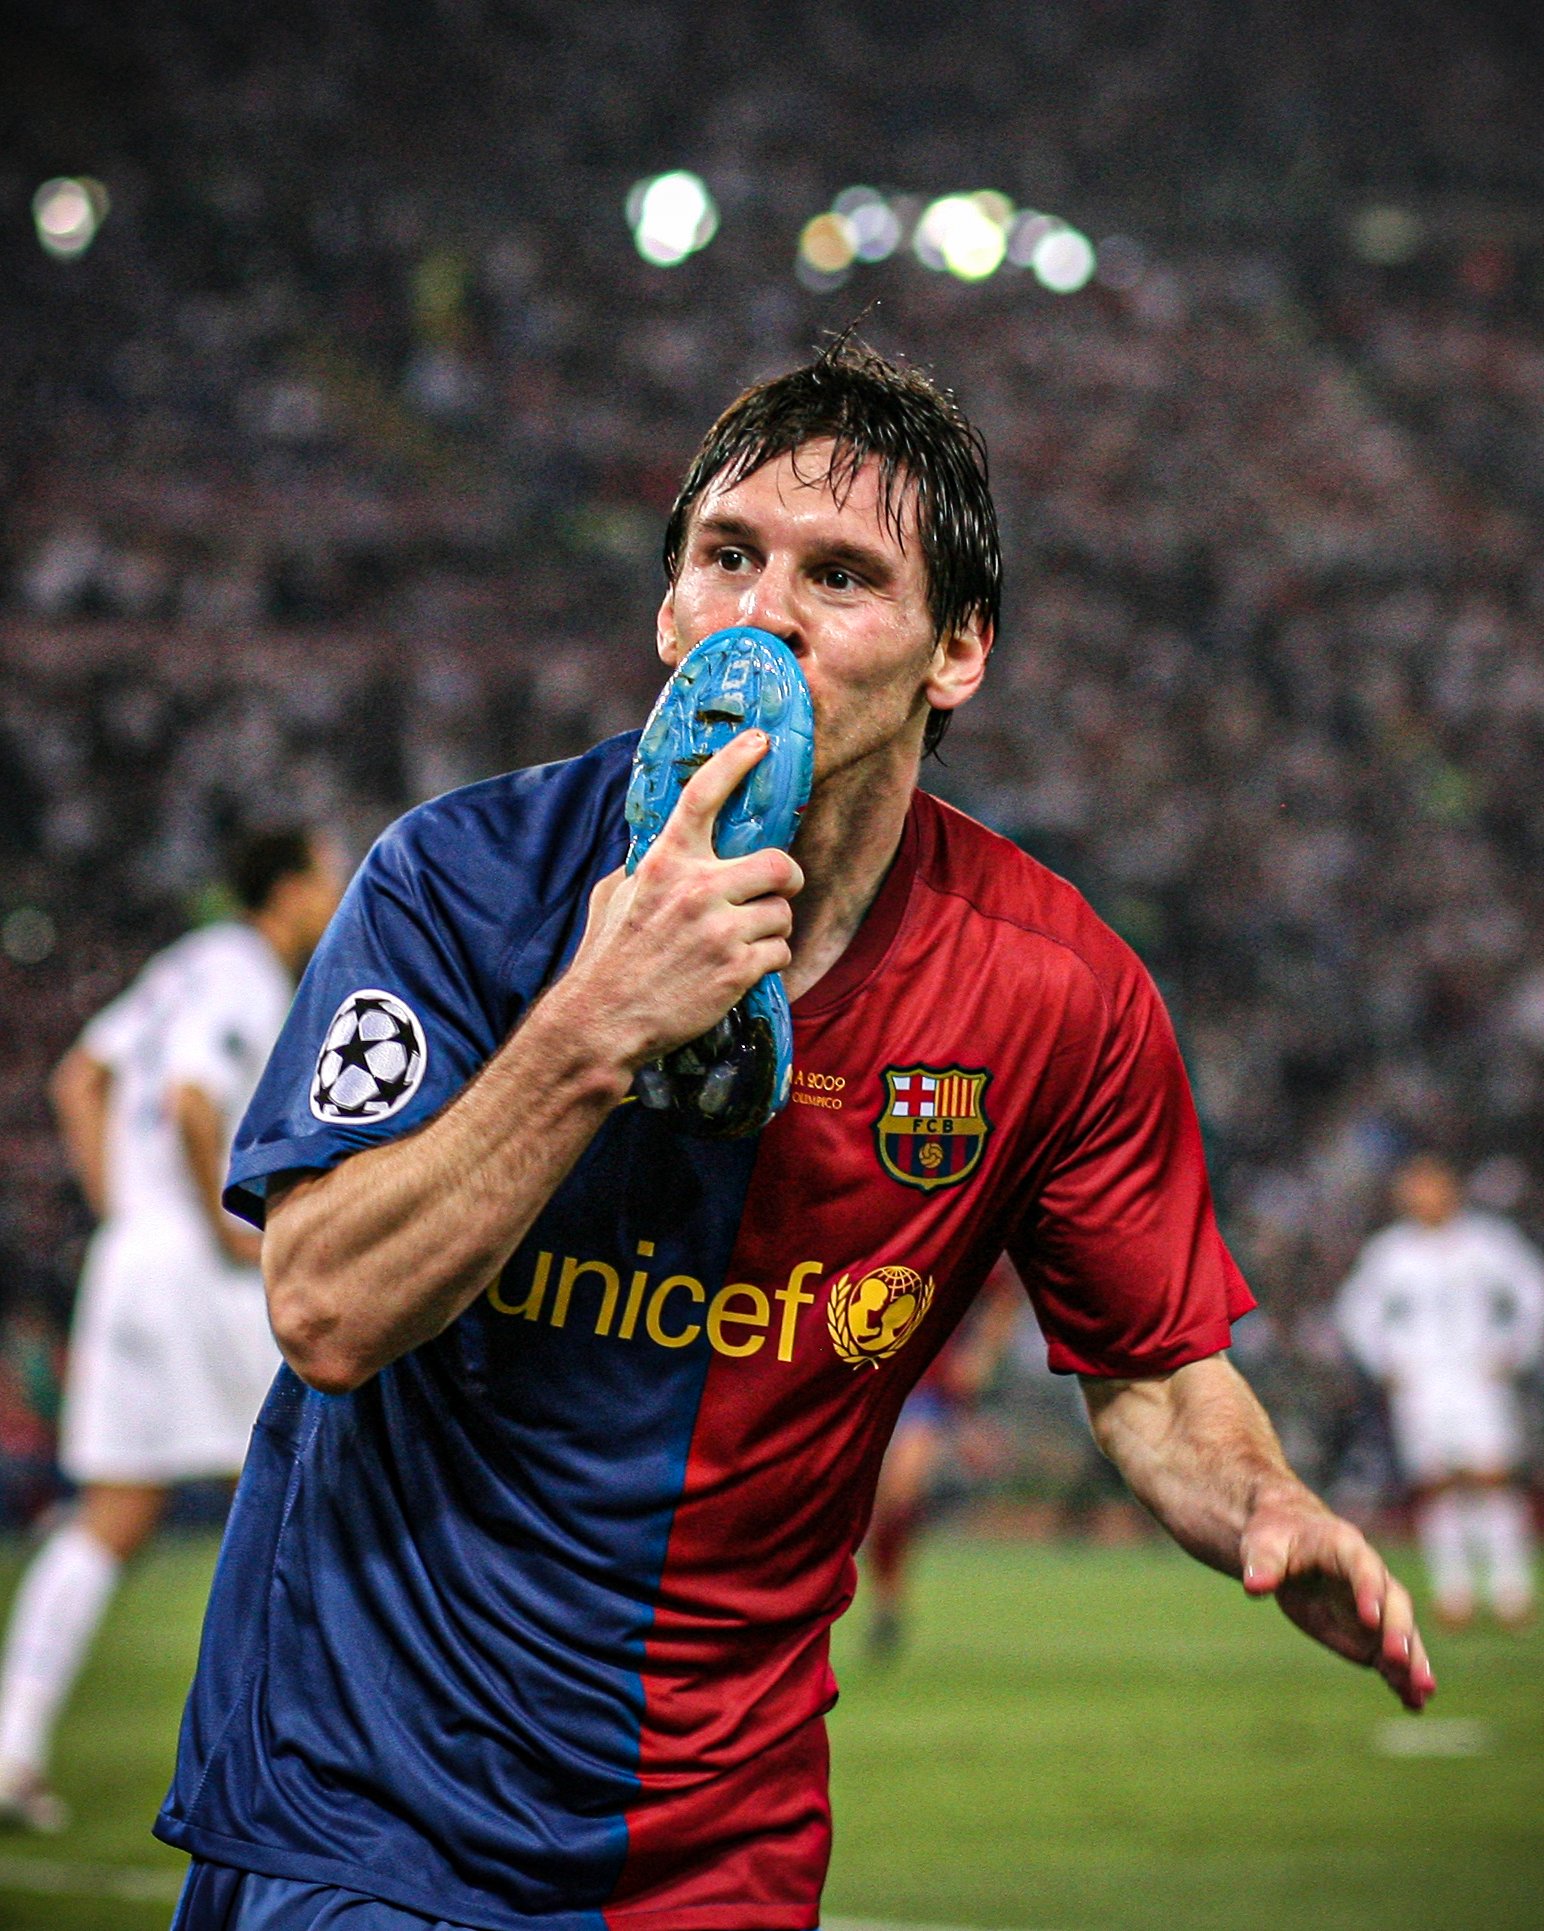 Nothing will top Lionel Messi\'s 2009 Champions đã ghi vào lịch sử bóng đá. Bàn thắng này được Messi ghi sau một pha đi bóng tuyệt hay trên sân của Real Madrid. Nếu bạn là một người hâm mộ Messi và bóng đá, đừng bỏ lỡ cơ hội xem lại bàn thắng tuyệt vời này.